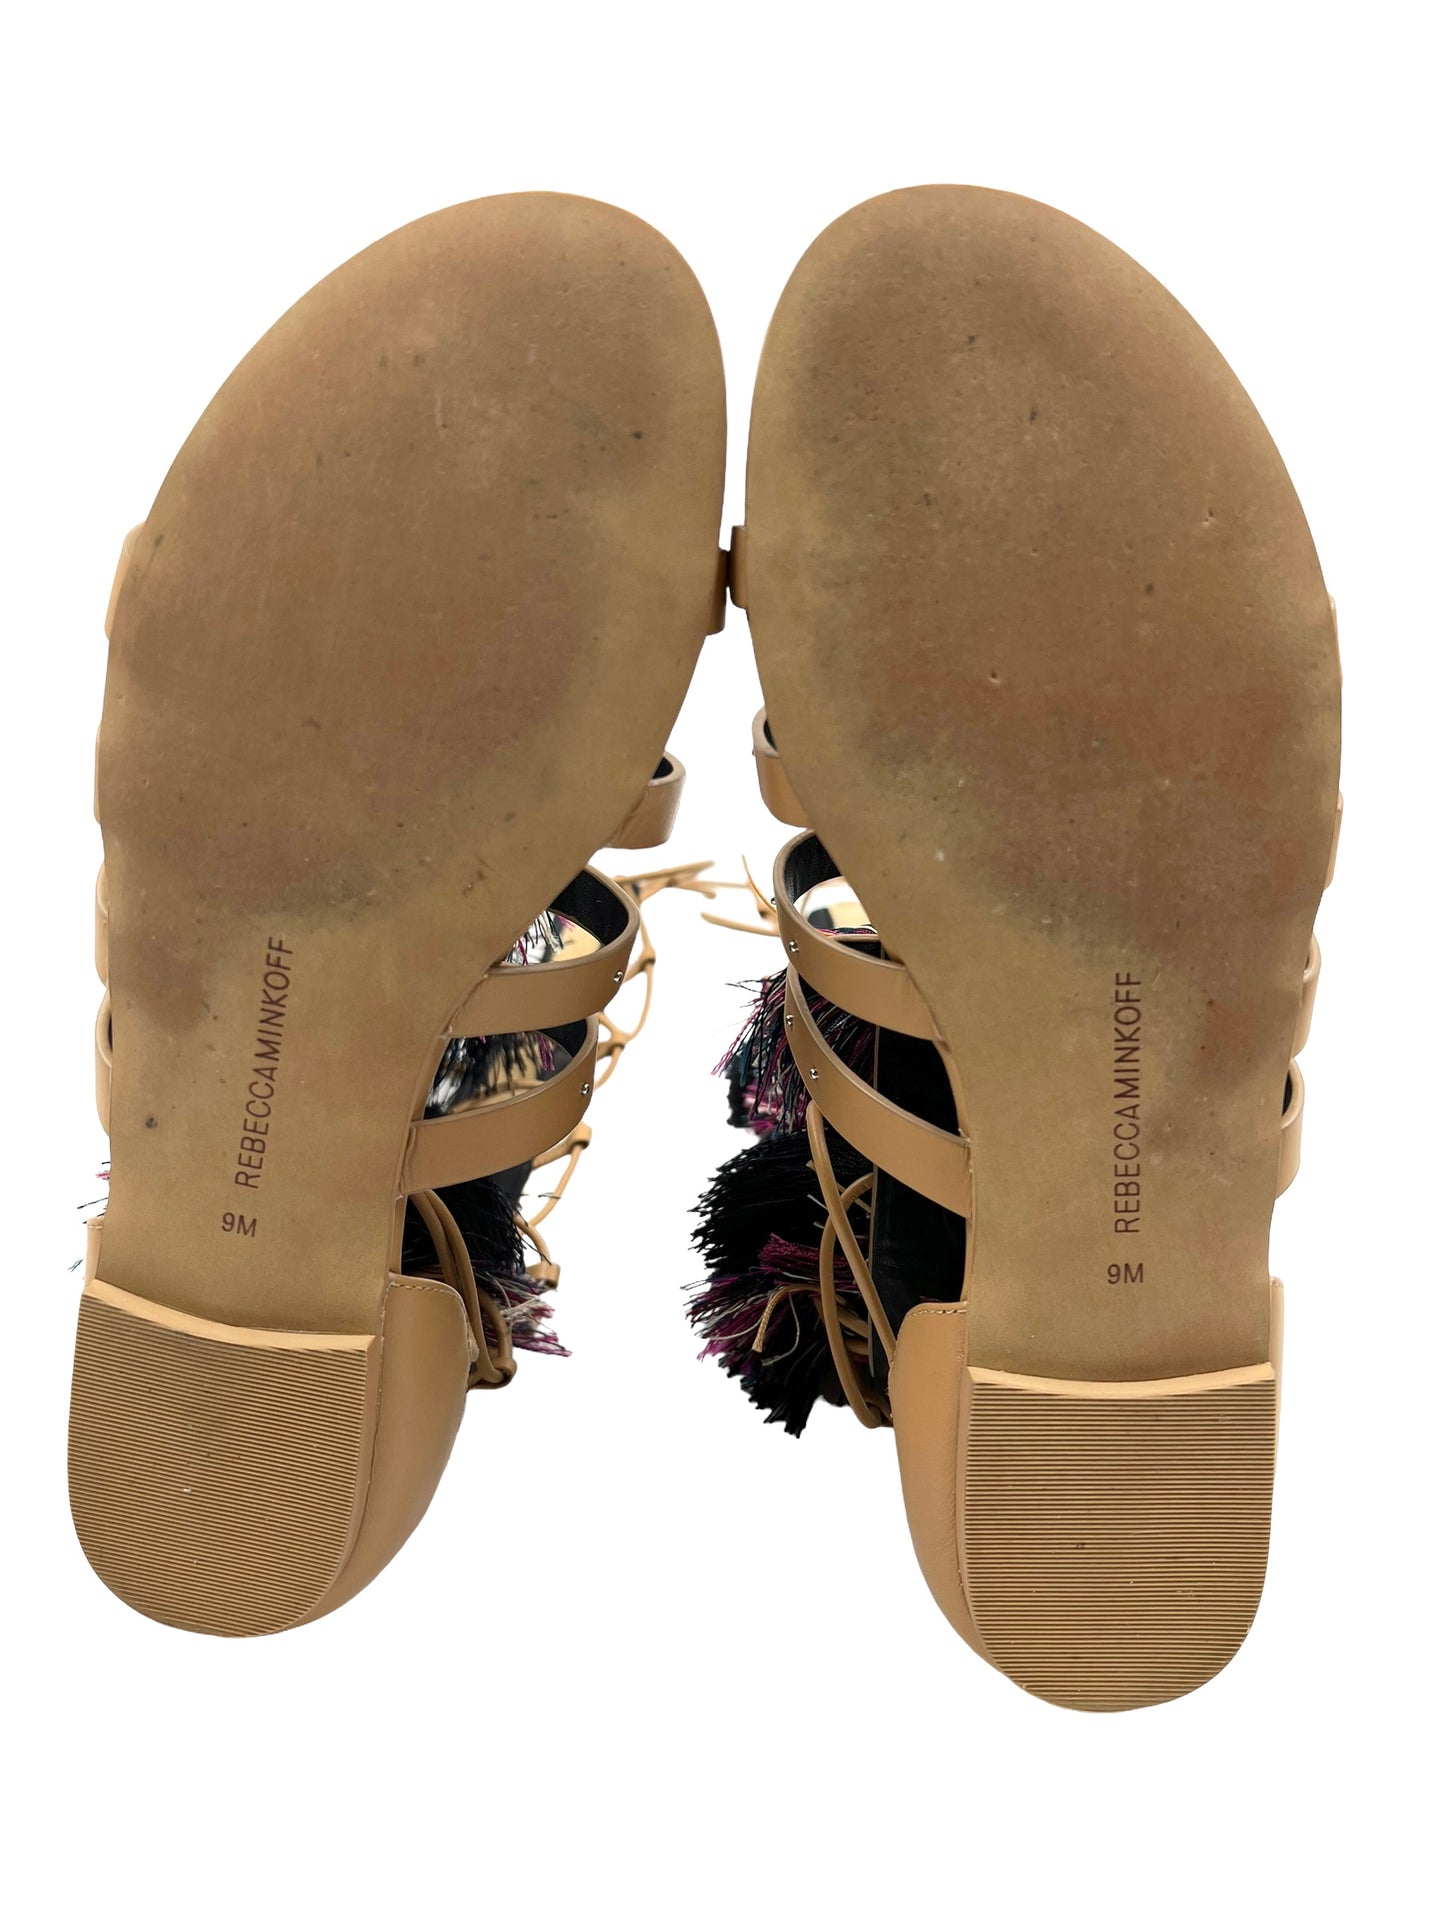 Rebecca Minkoff Size 9 'Eve' Leather Gladiator Tassel Pom Pom Sandals